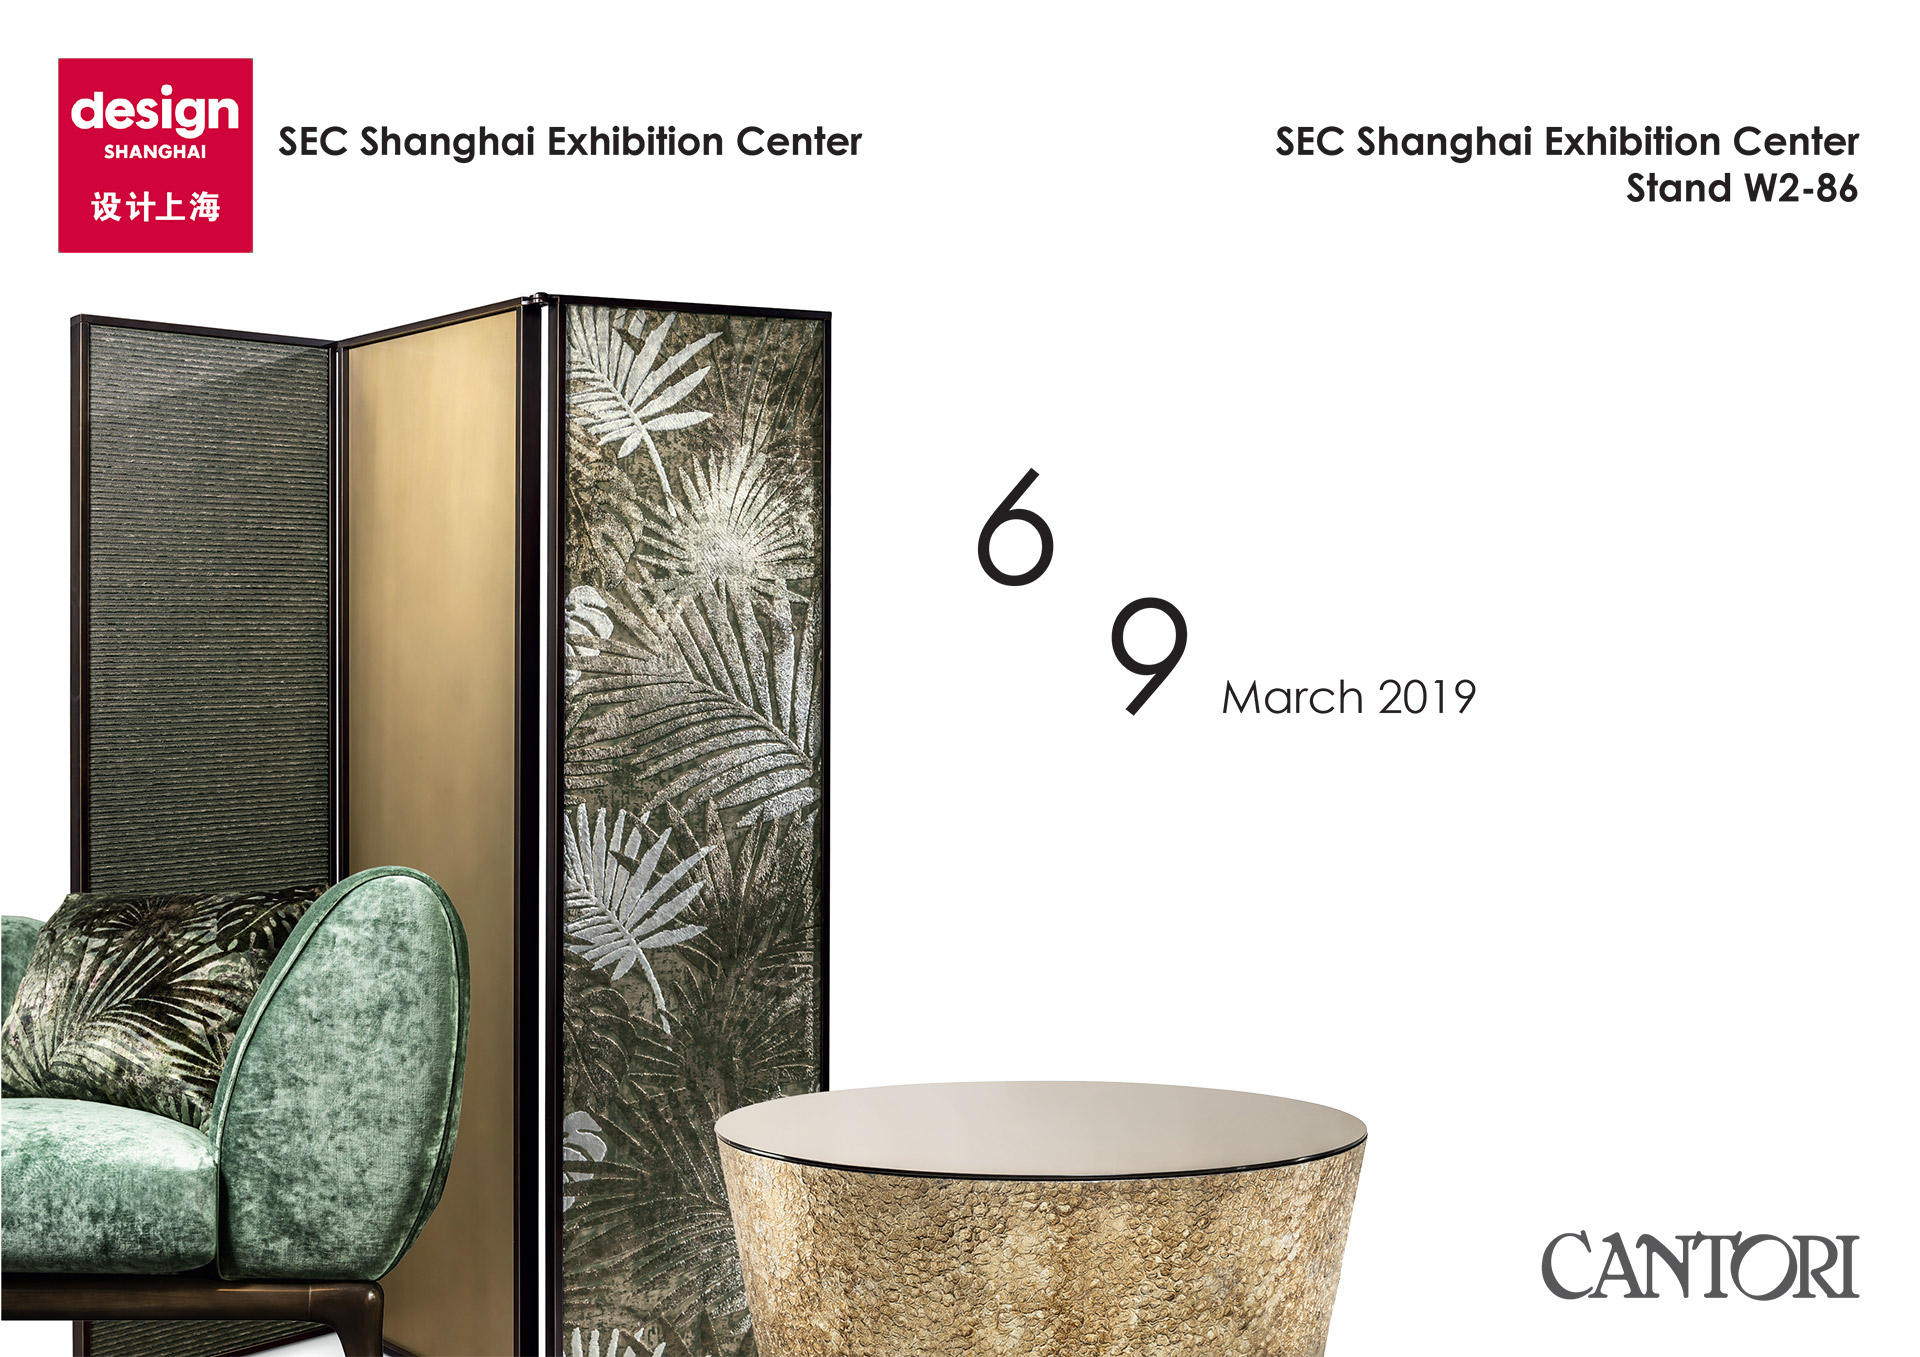 12/02/2019 Cantori a Design Shanghai 2019 - Cantori